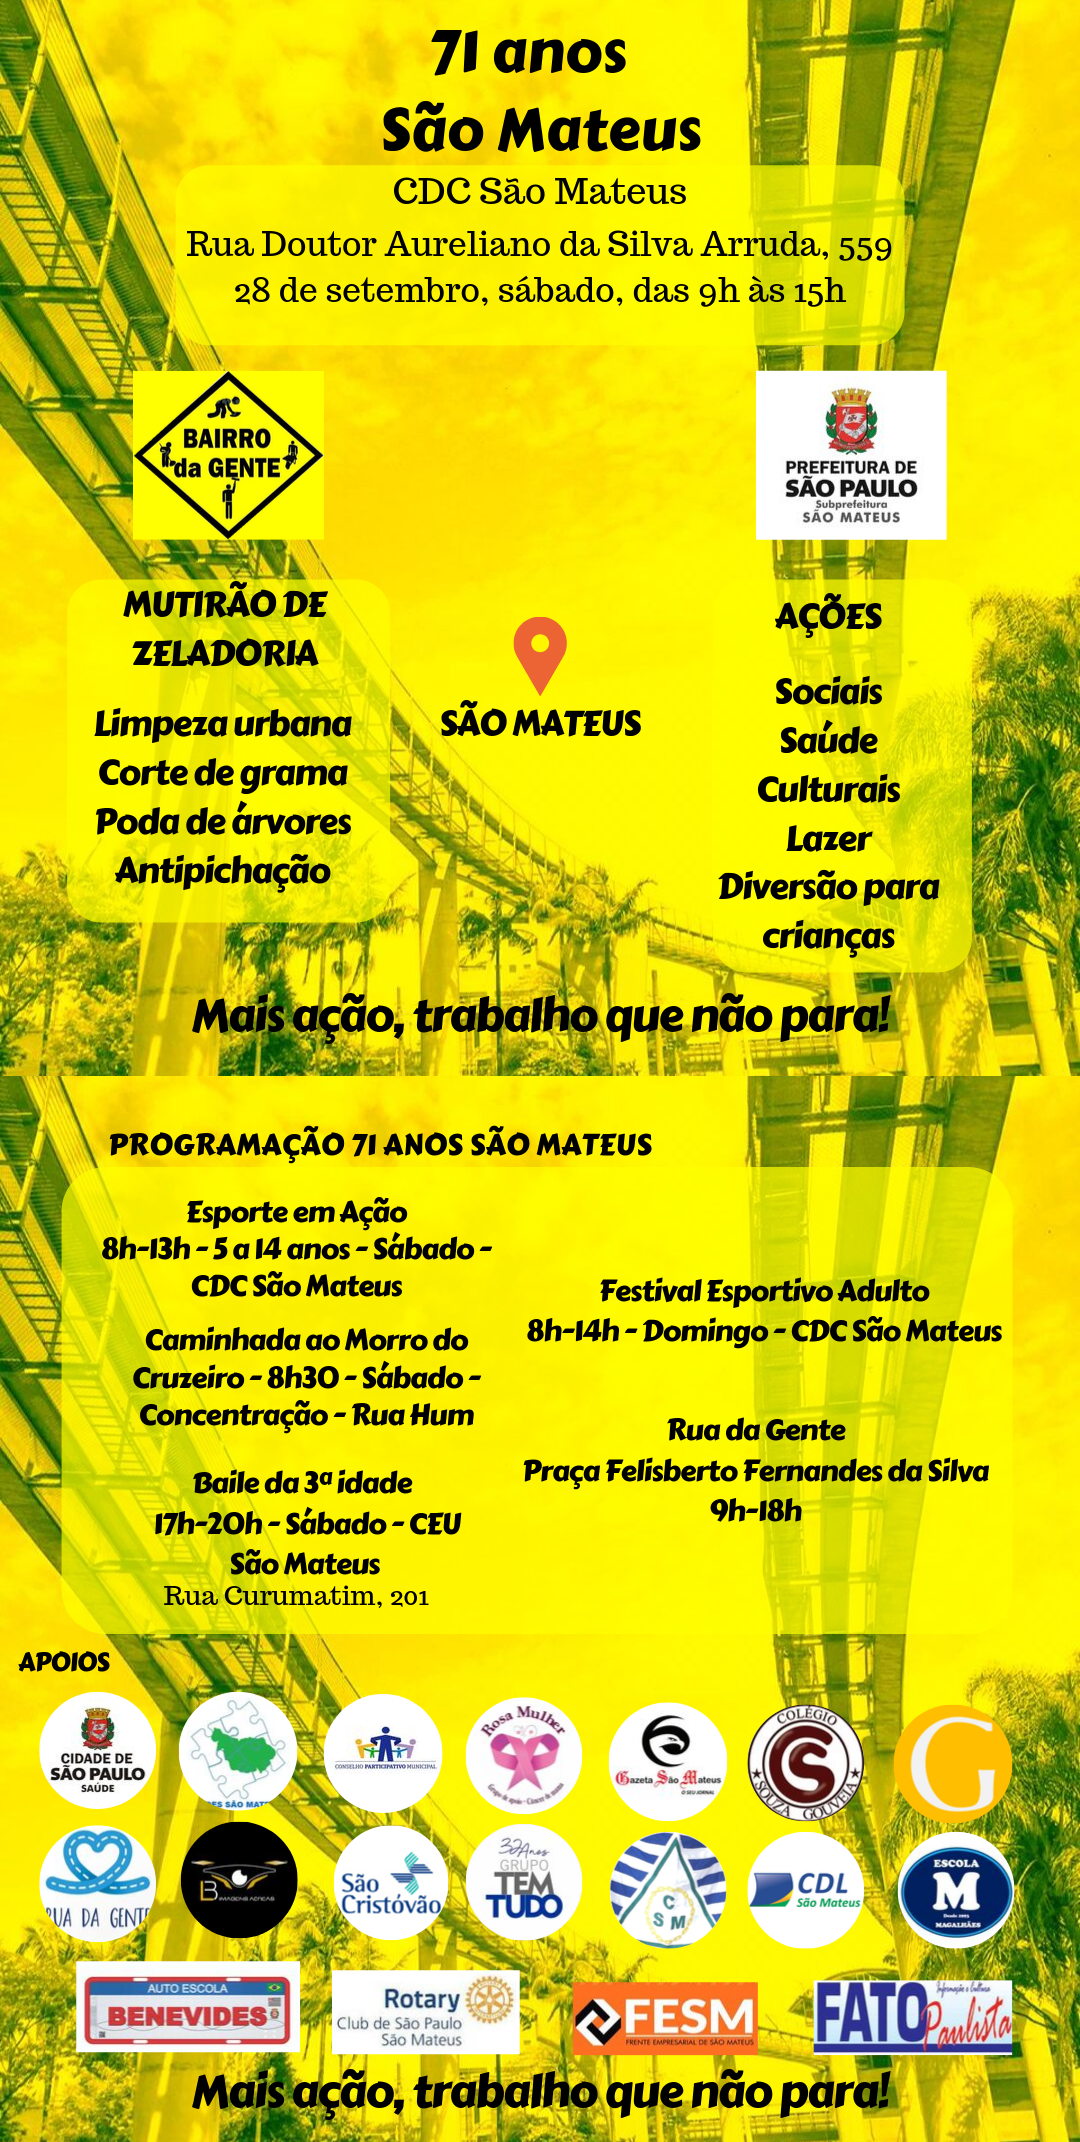 Convite do evento do aniversário de São Mateus, juntamente com o mutirão Bairro da Gente. Fundo amarelo, foto do Monotrilho, endereço e atividades em preto.